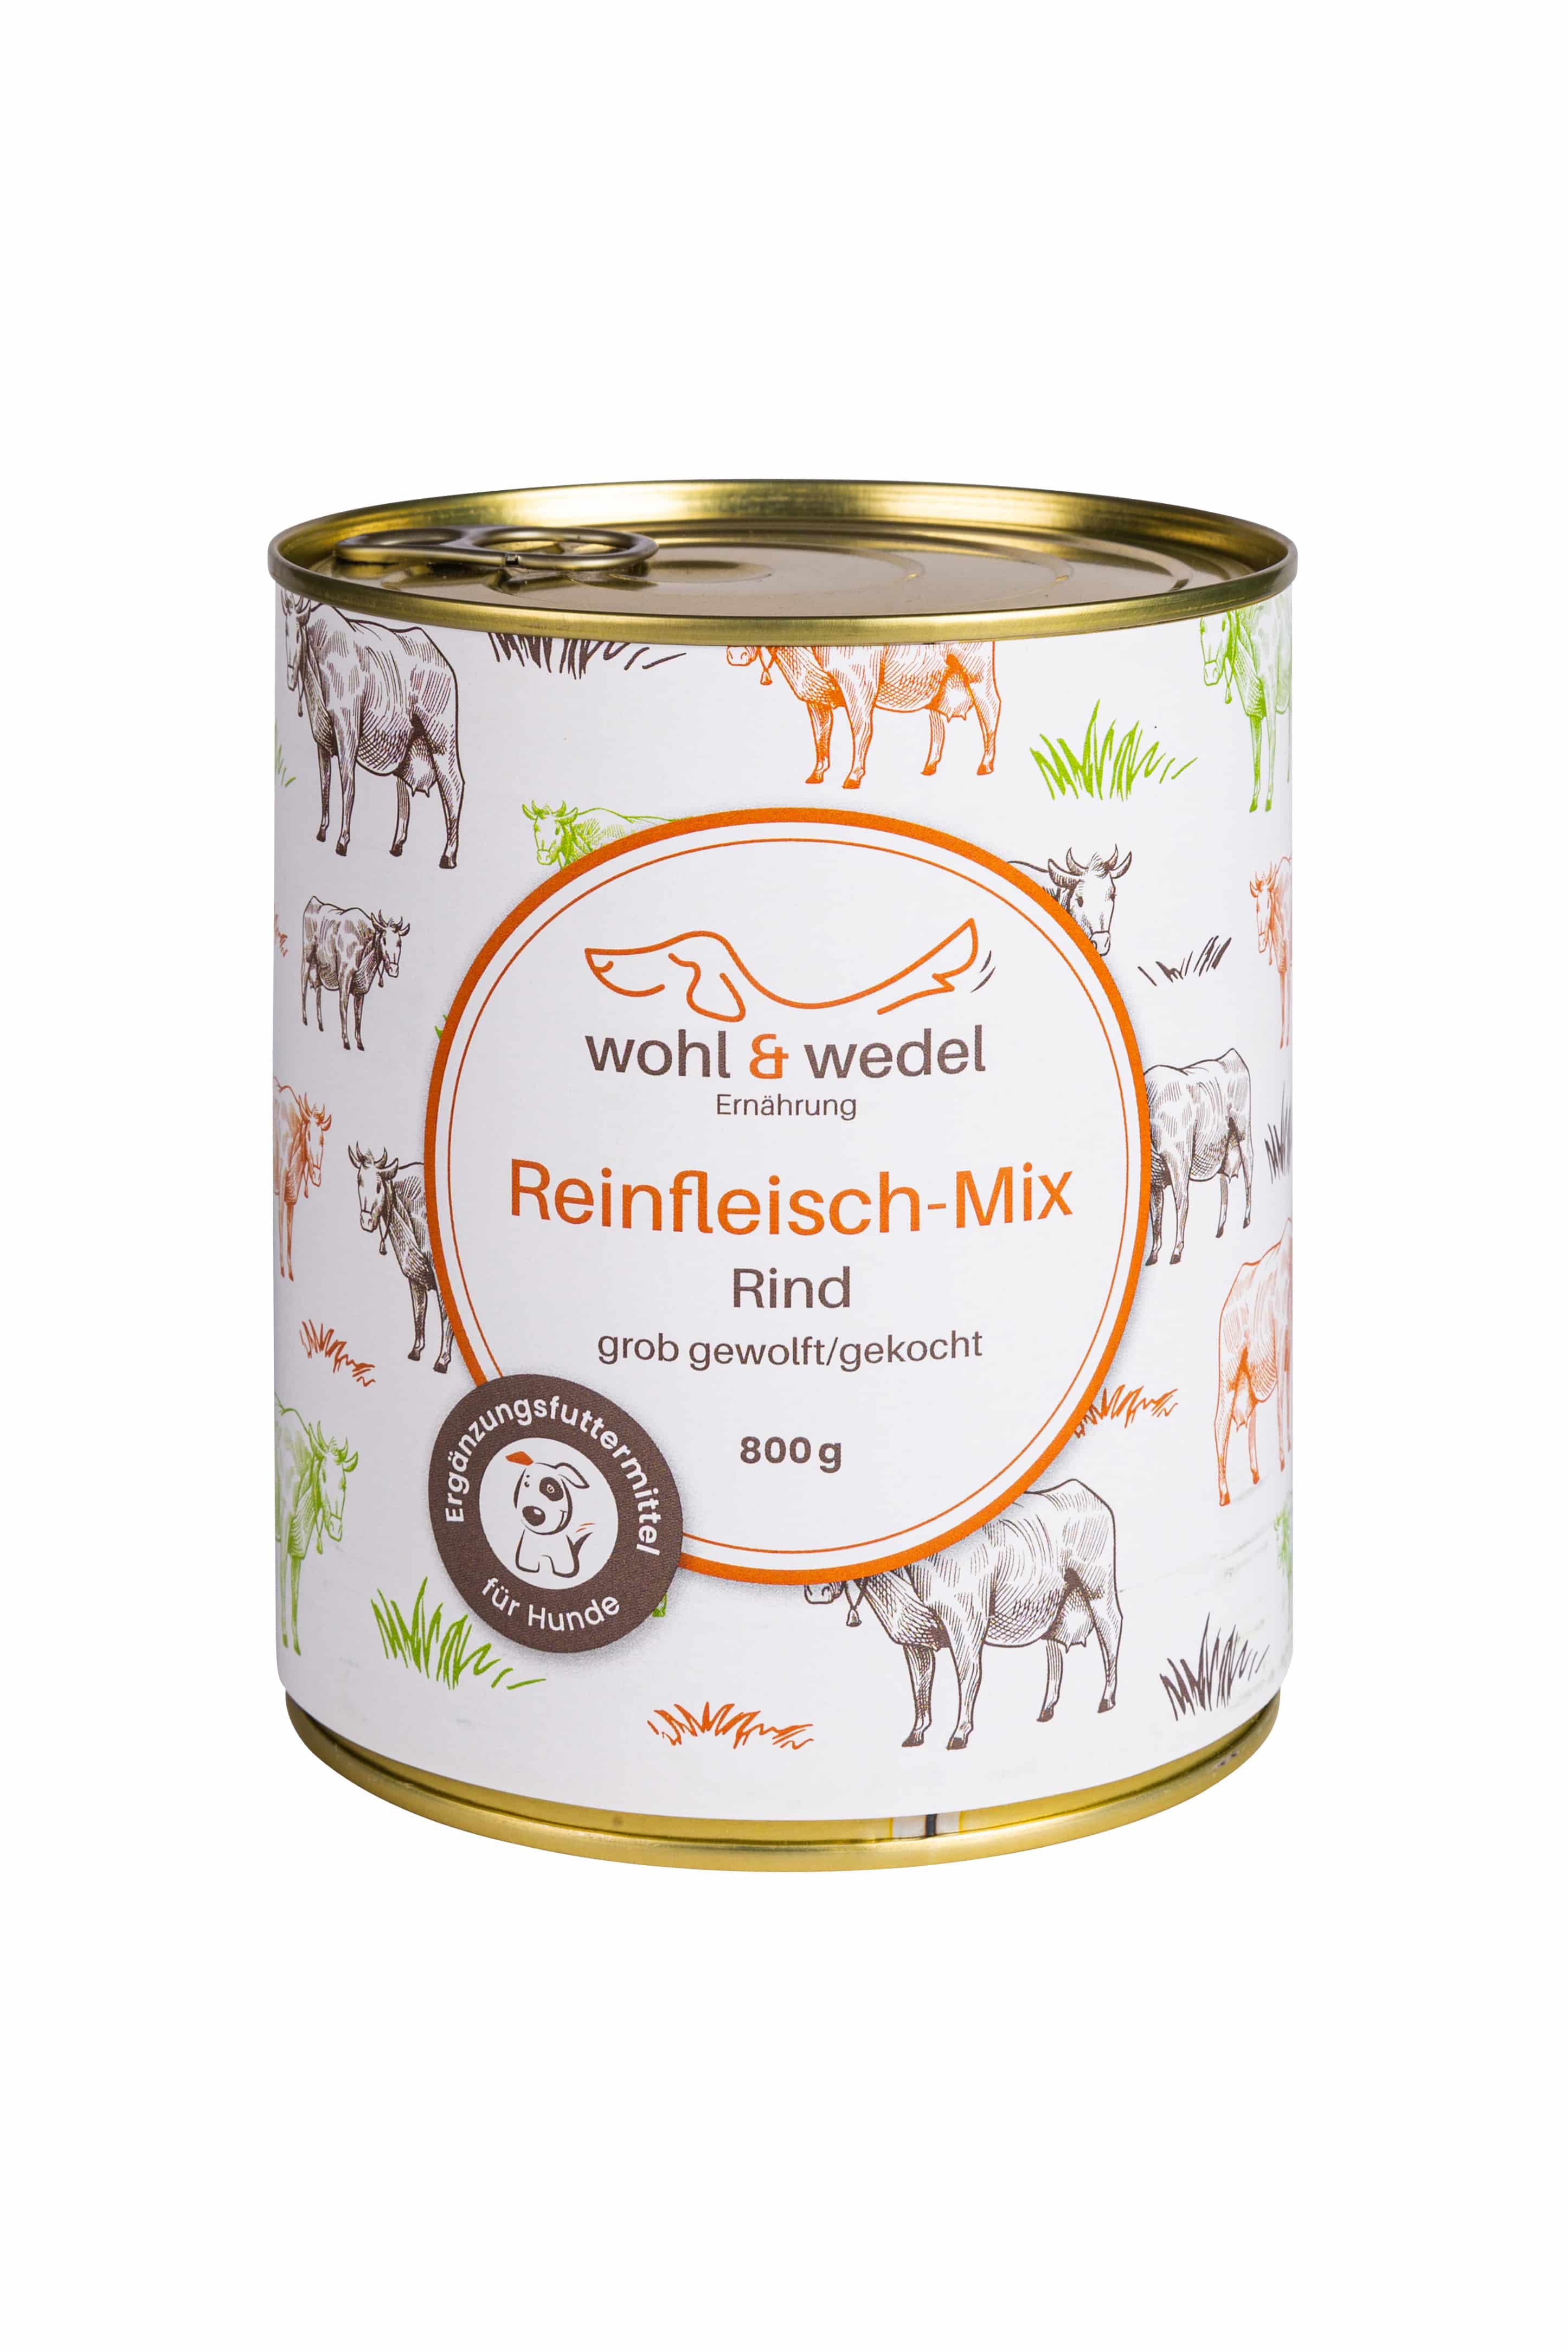 wohl & wedel Reinfleisch-Mix Rind 800 g  